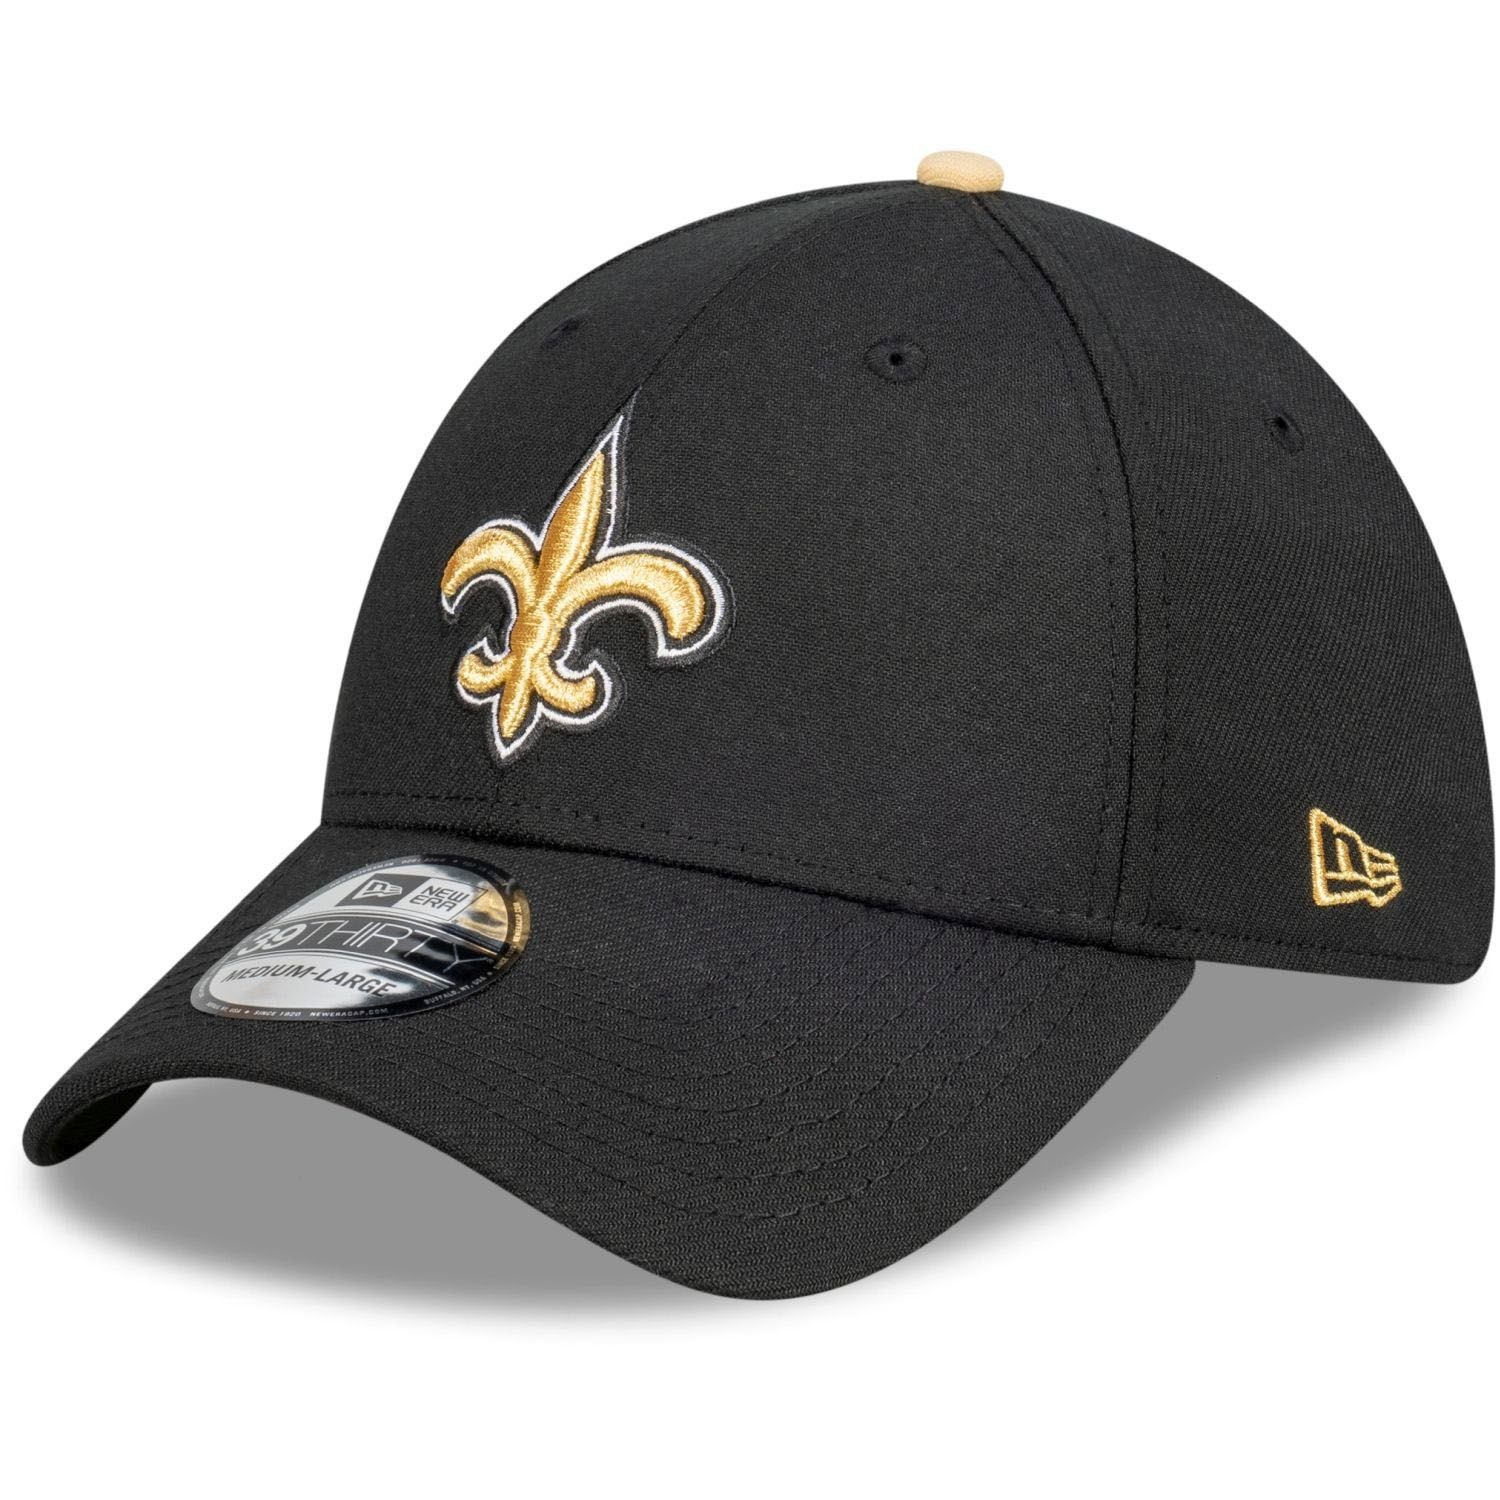 New Era Flex Cap 39Thirty StretchFit NFL Teams New Orleans Saints